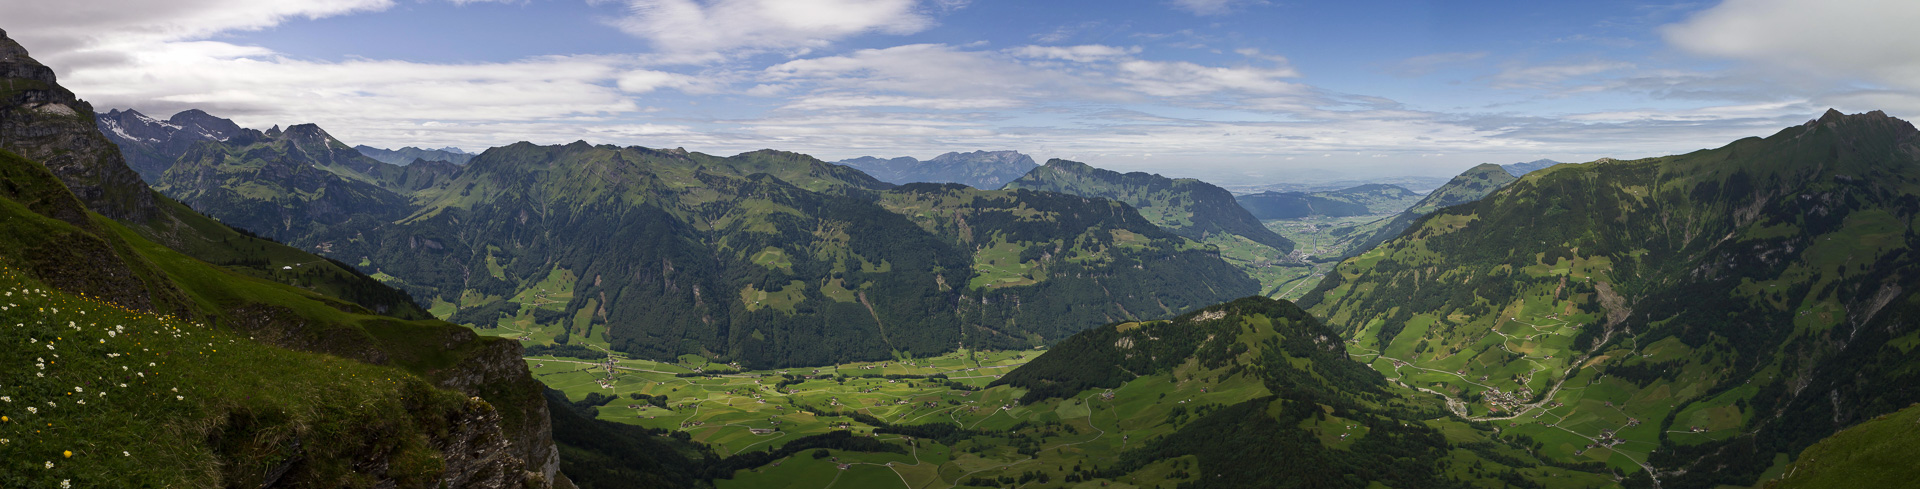 Aussichtskanzel hoch über dem Engelberger Tal.